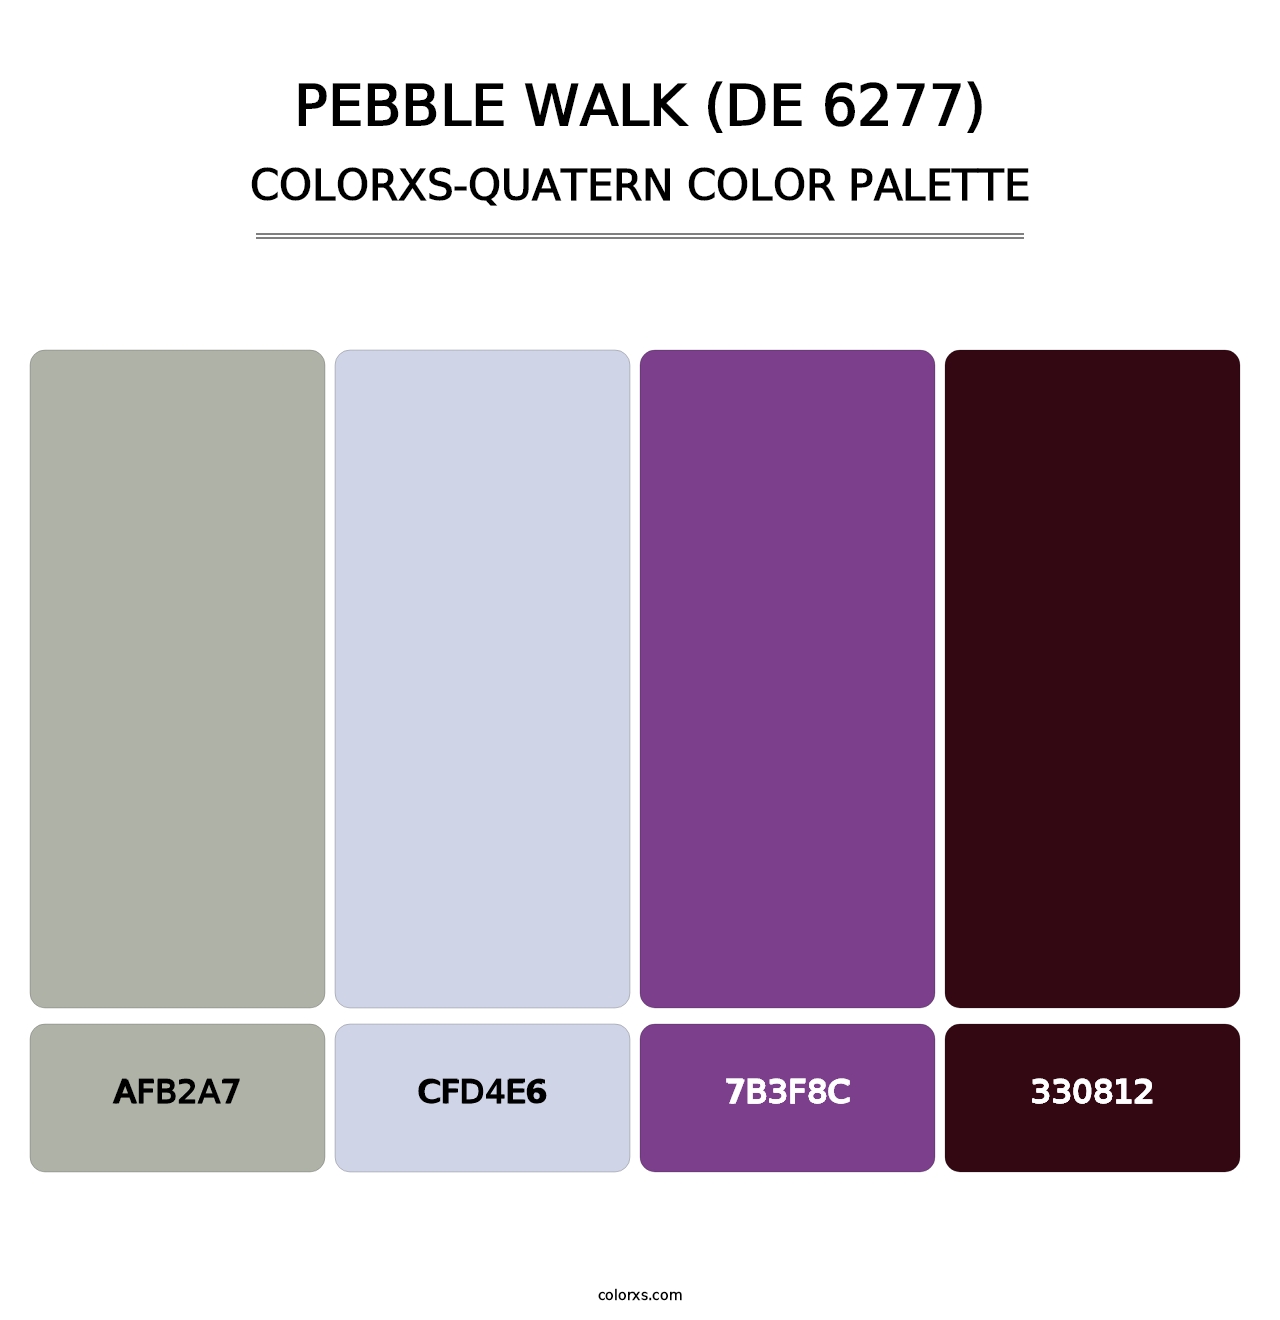 Pebble Walk (DE 6277) - Colorxs Quatern Palette